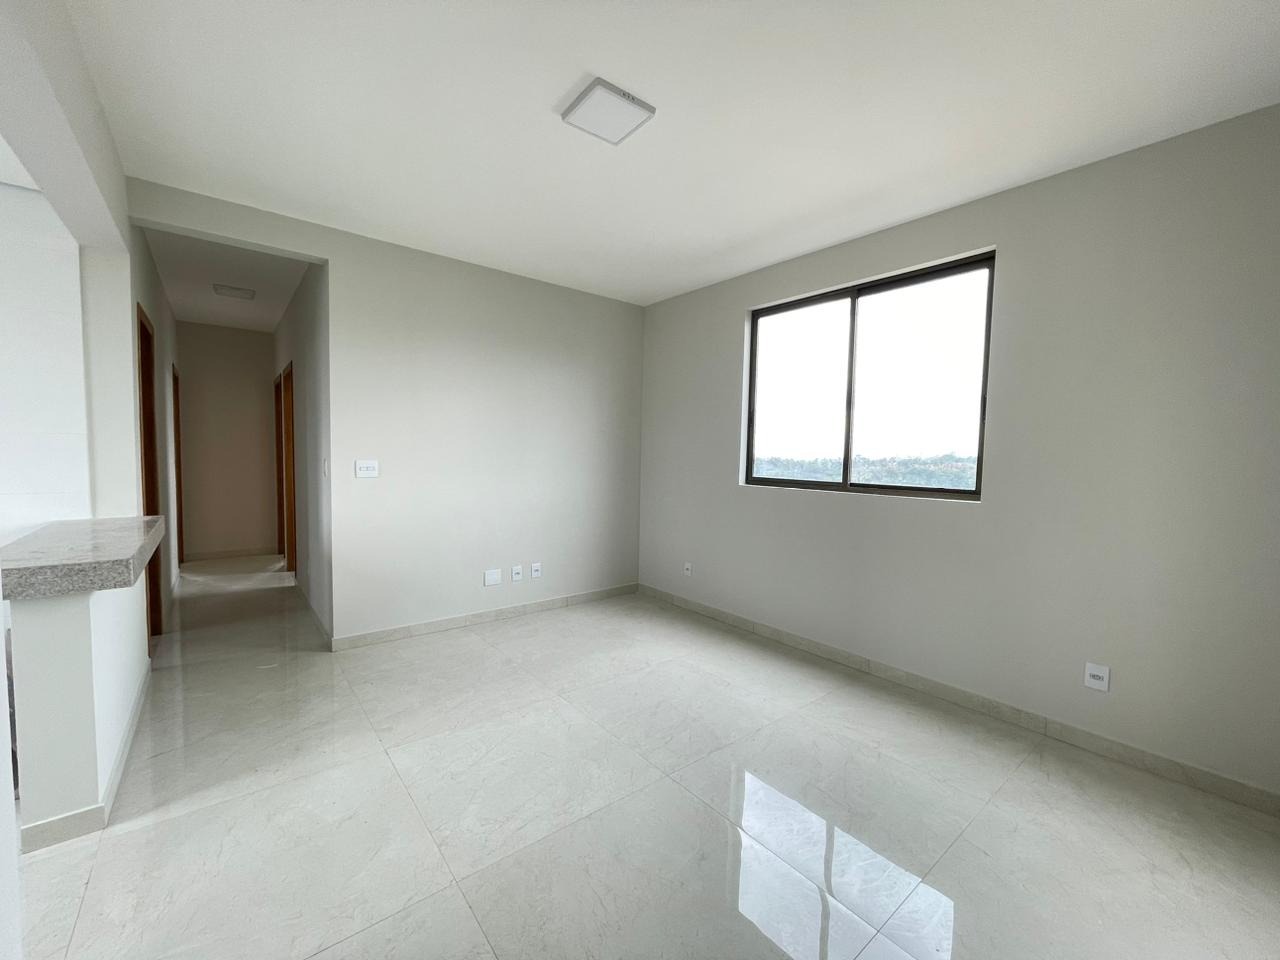 Área privativa à venda no Barreiro: Apartamento à venda, 03 Quartos com suíte - Barreiro/MG